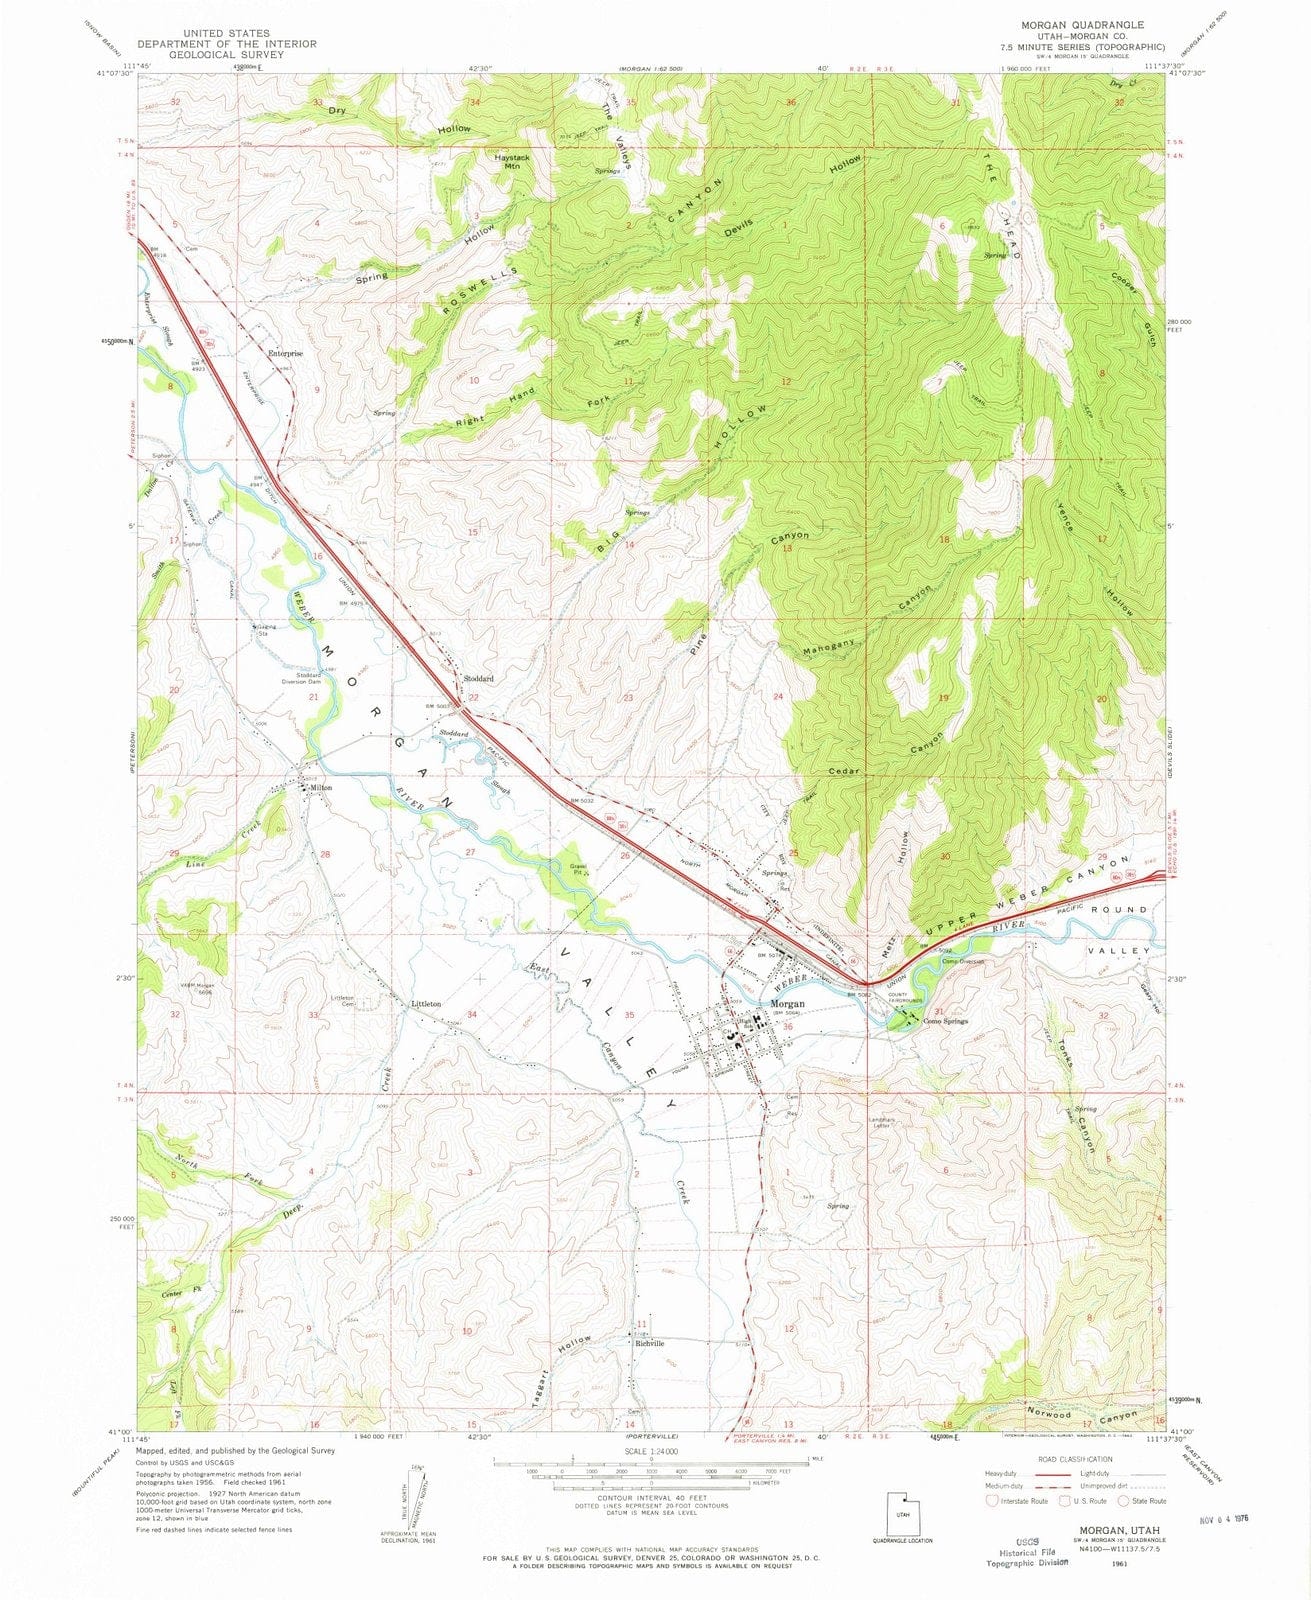 1961 Morgan, UT - Utah - USGS Topographic Map